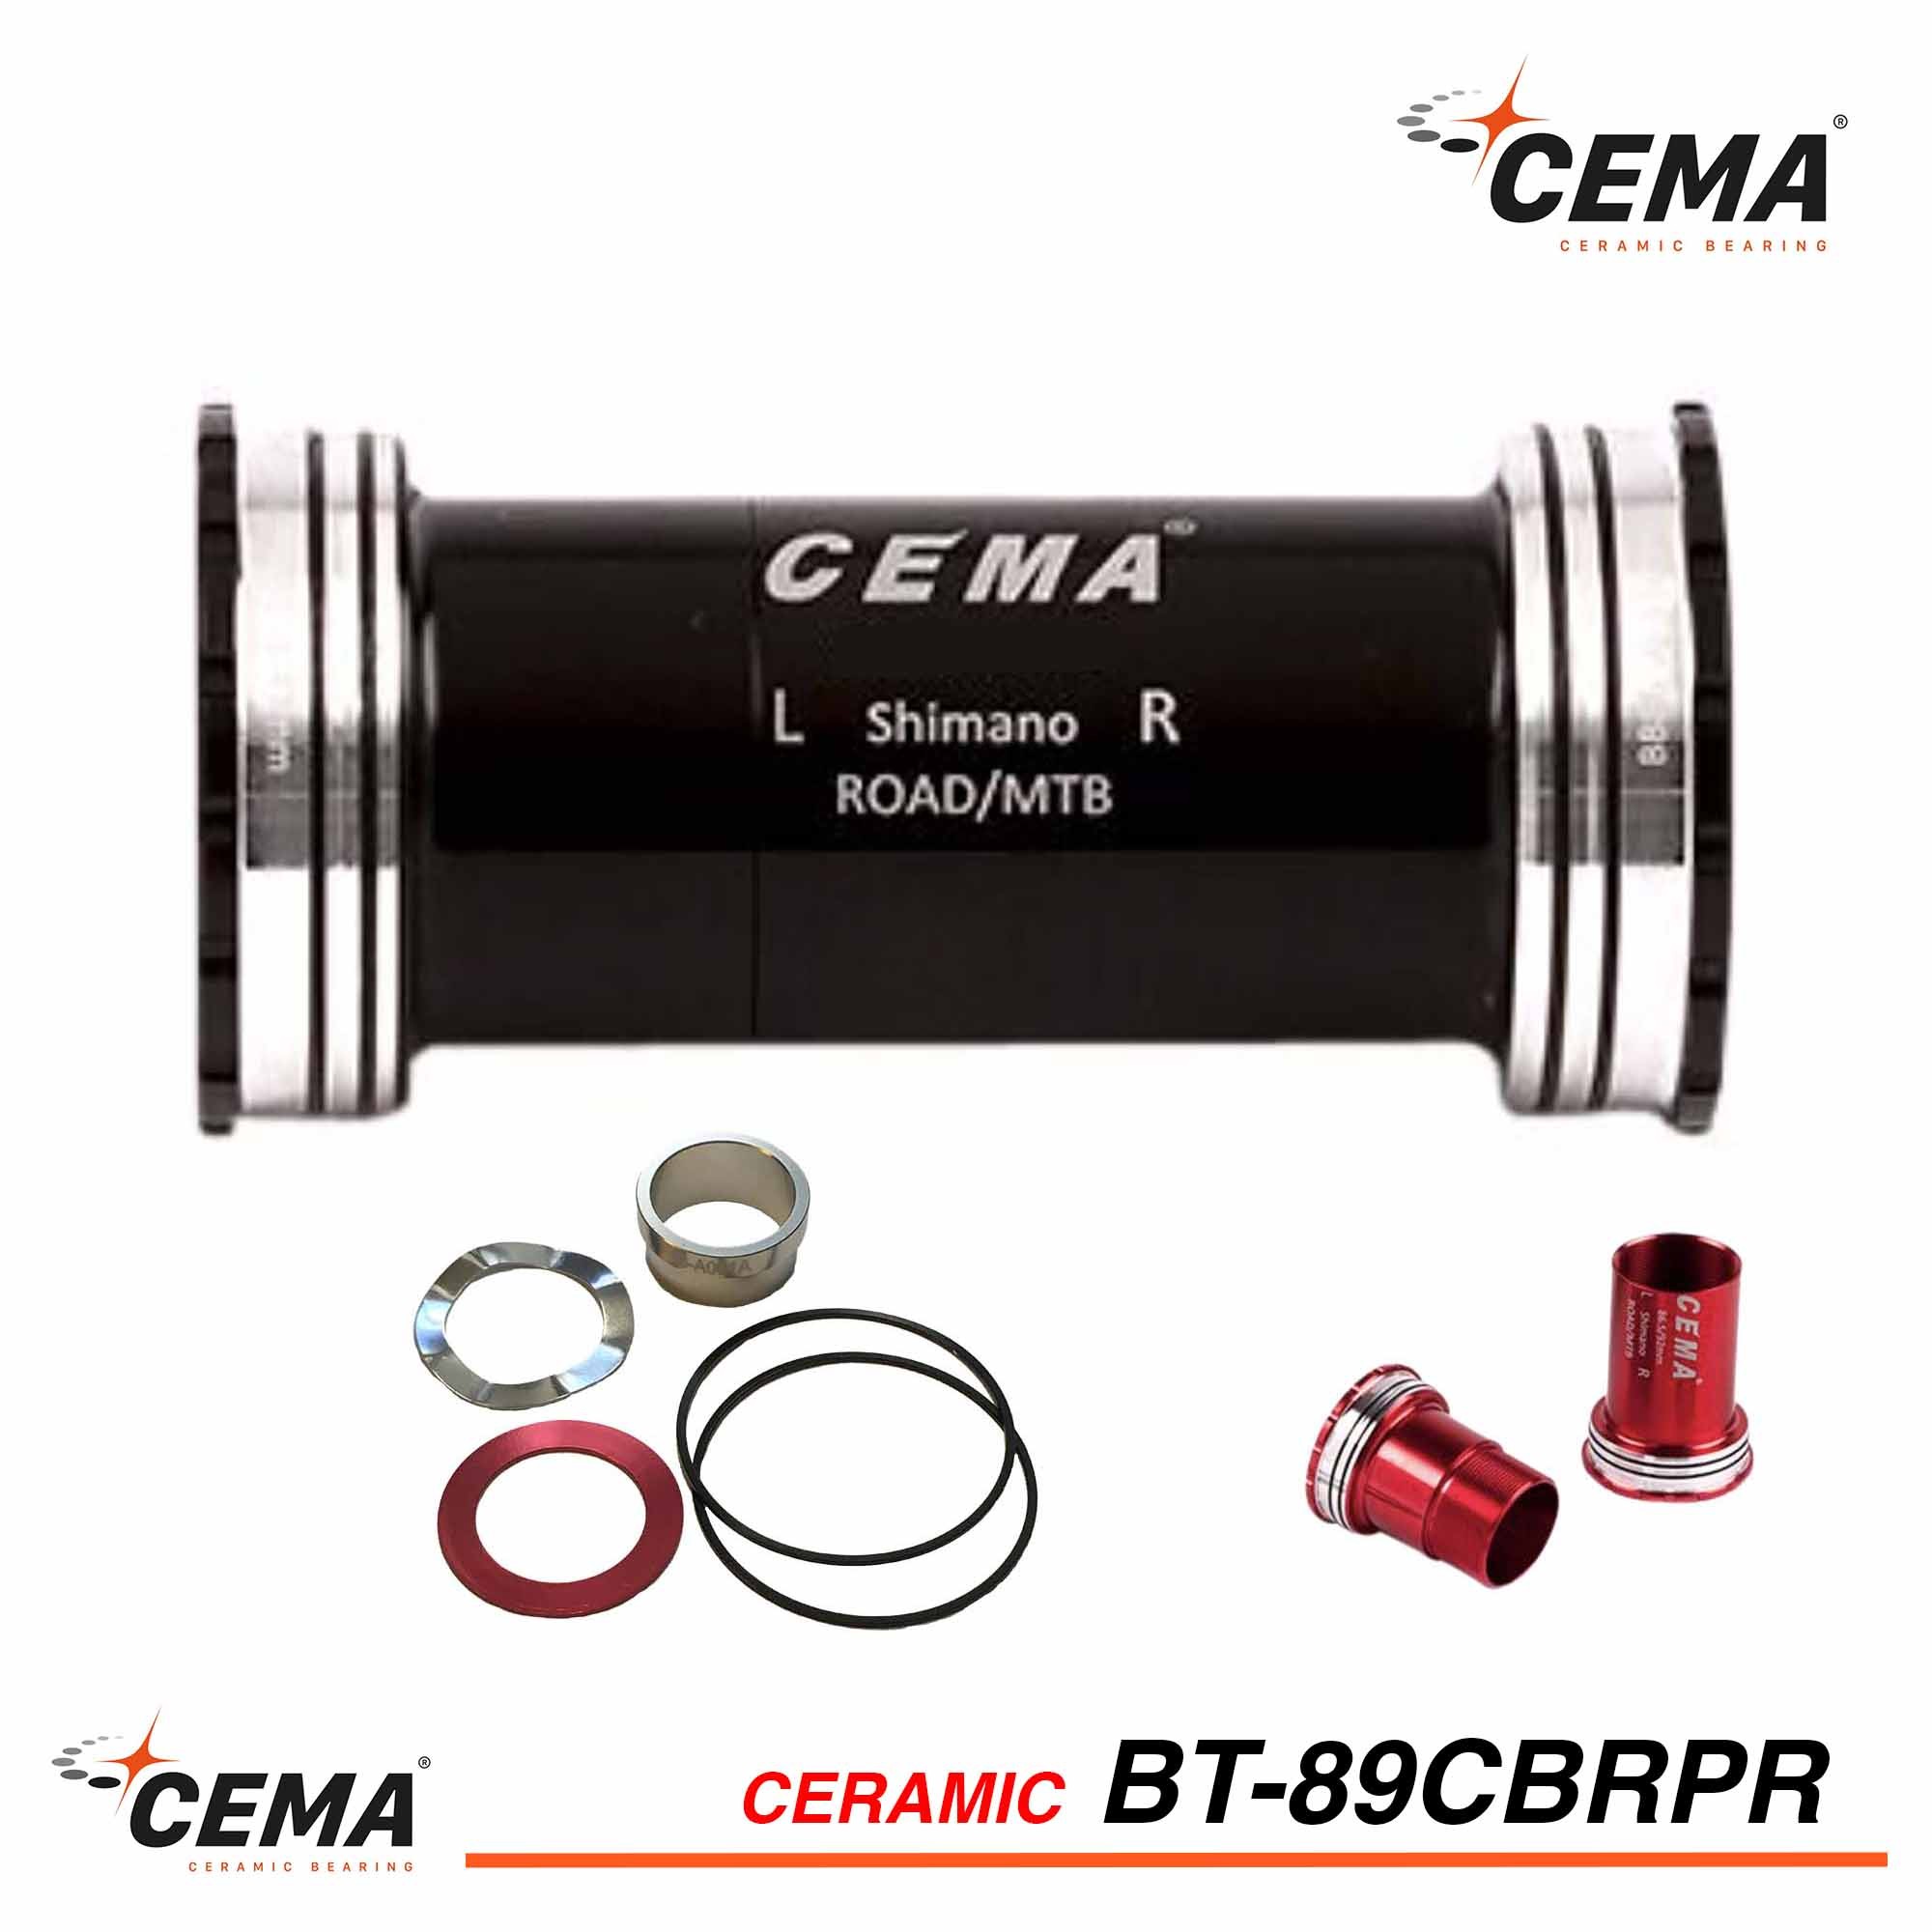 Boitier de pédalier CEMA BB89 céramique pour SRAM GXP